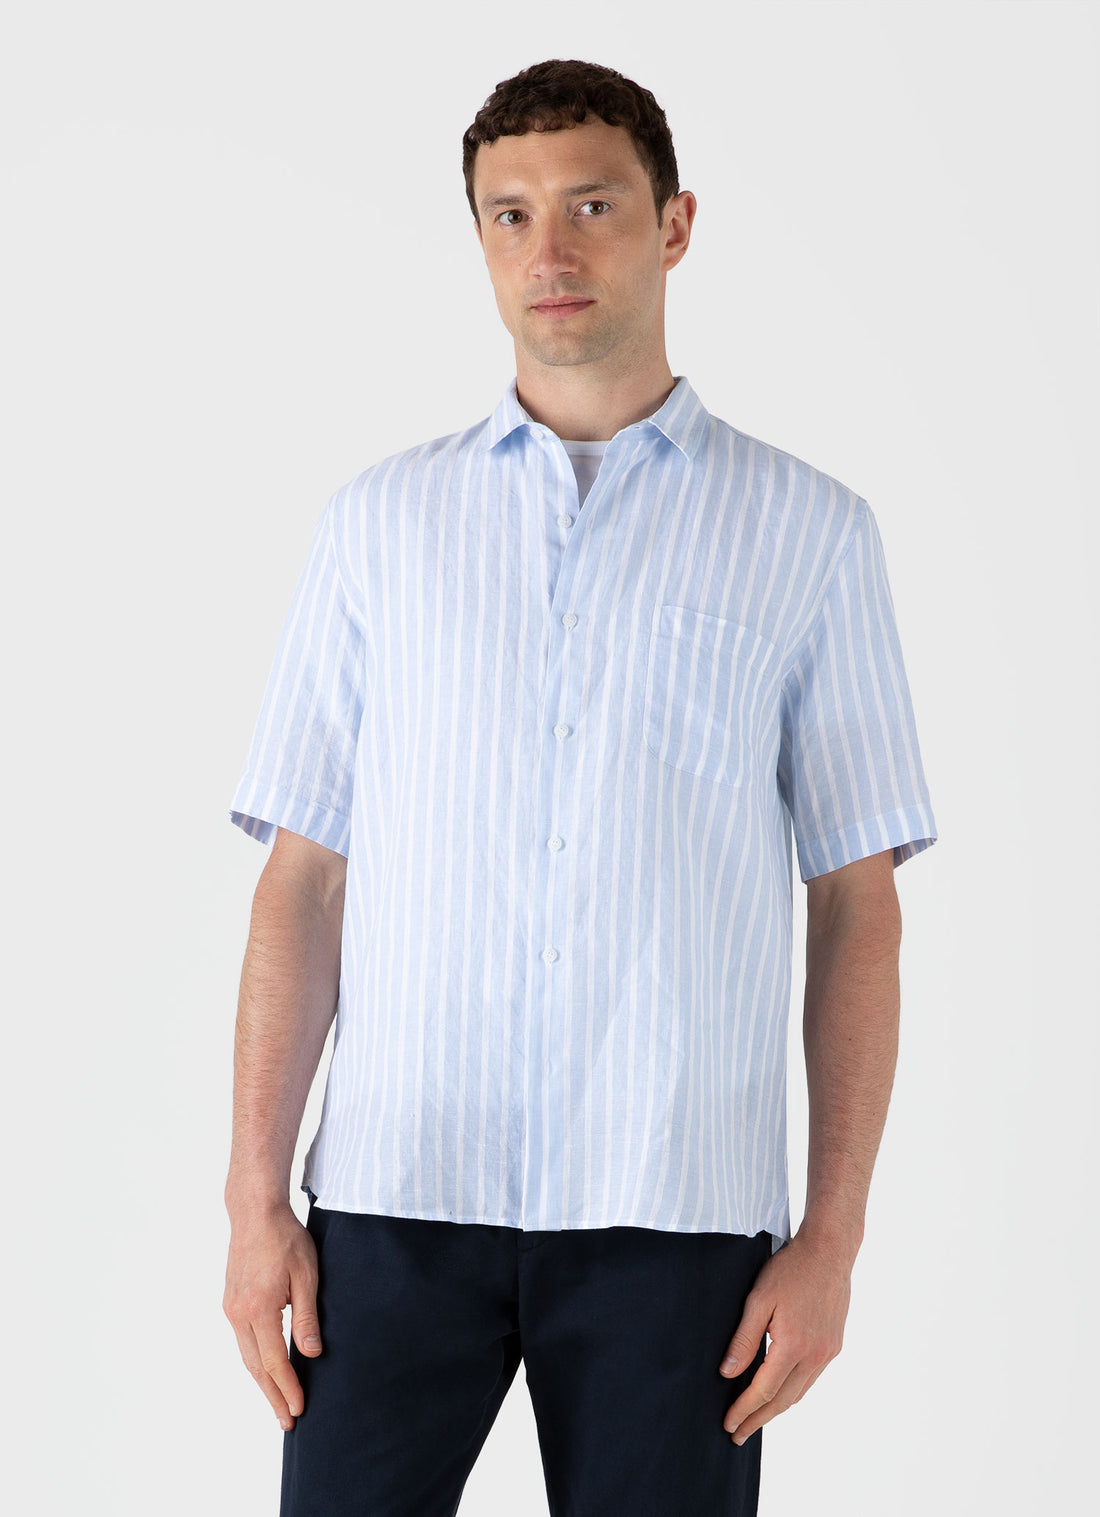 Men's Short Sleeve Linen Shirt in Light Blue/White